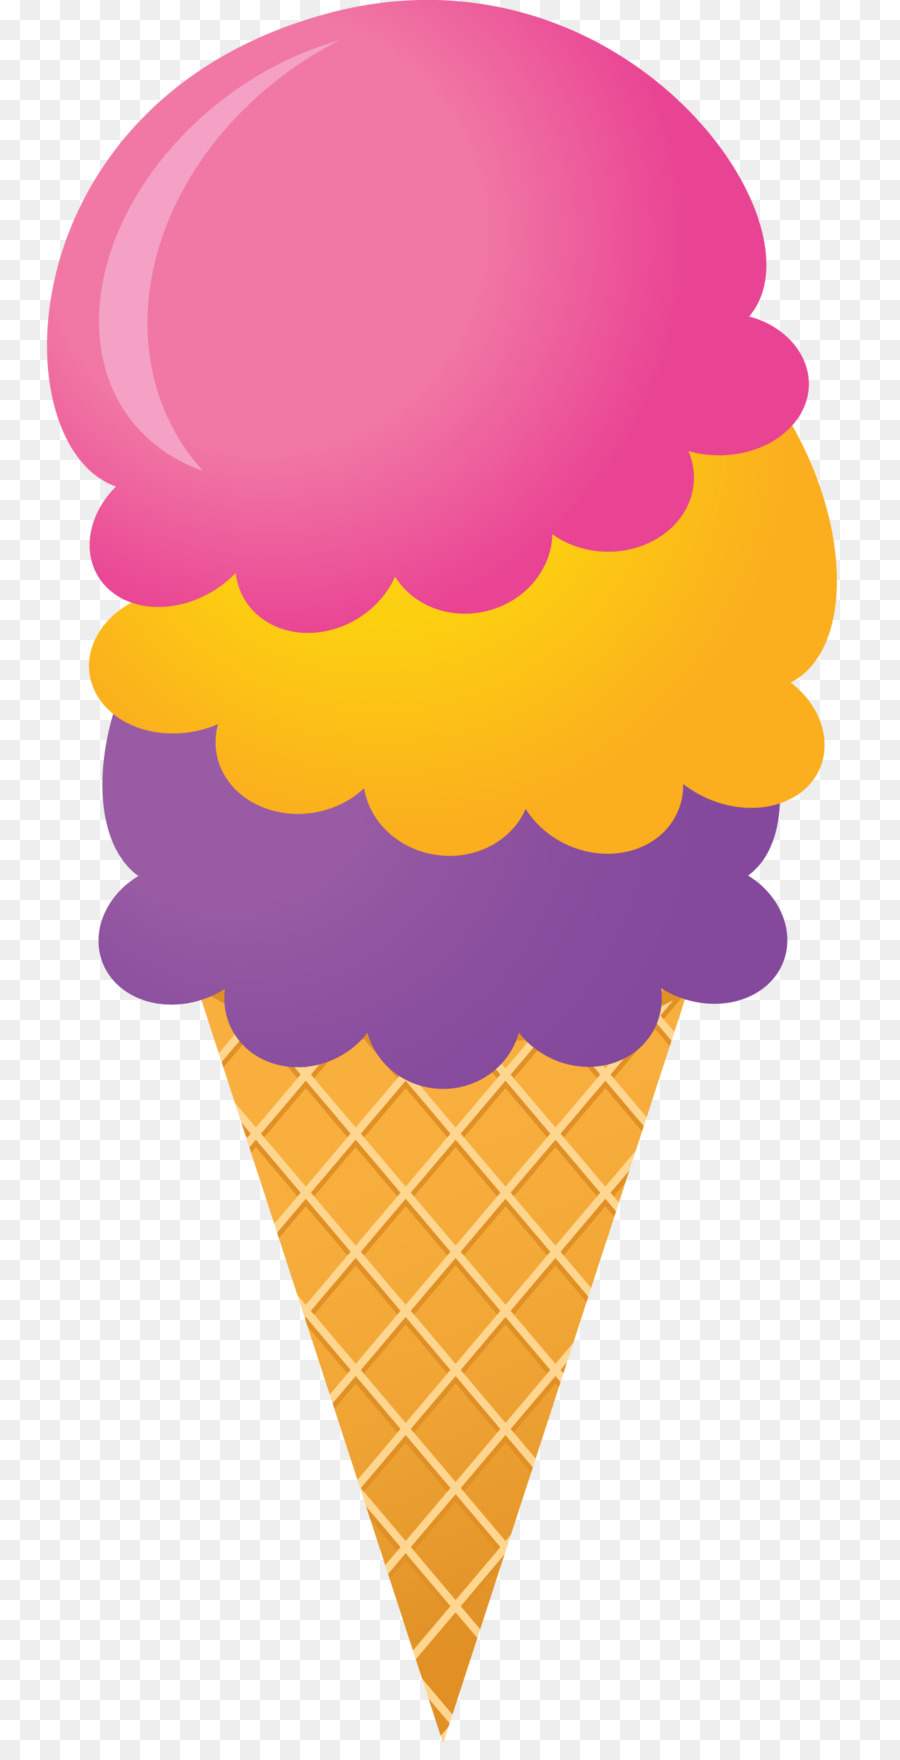 Ice Cream Cones Chocolate ice cream Sundae Clip art - ice cream png download - 1368*2650 - Free Transparent Ice Cream Cones png Download.